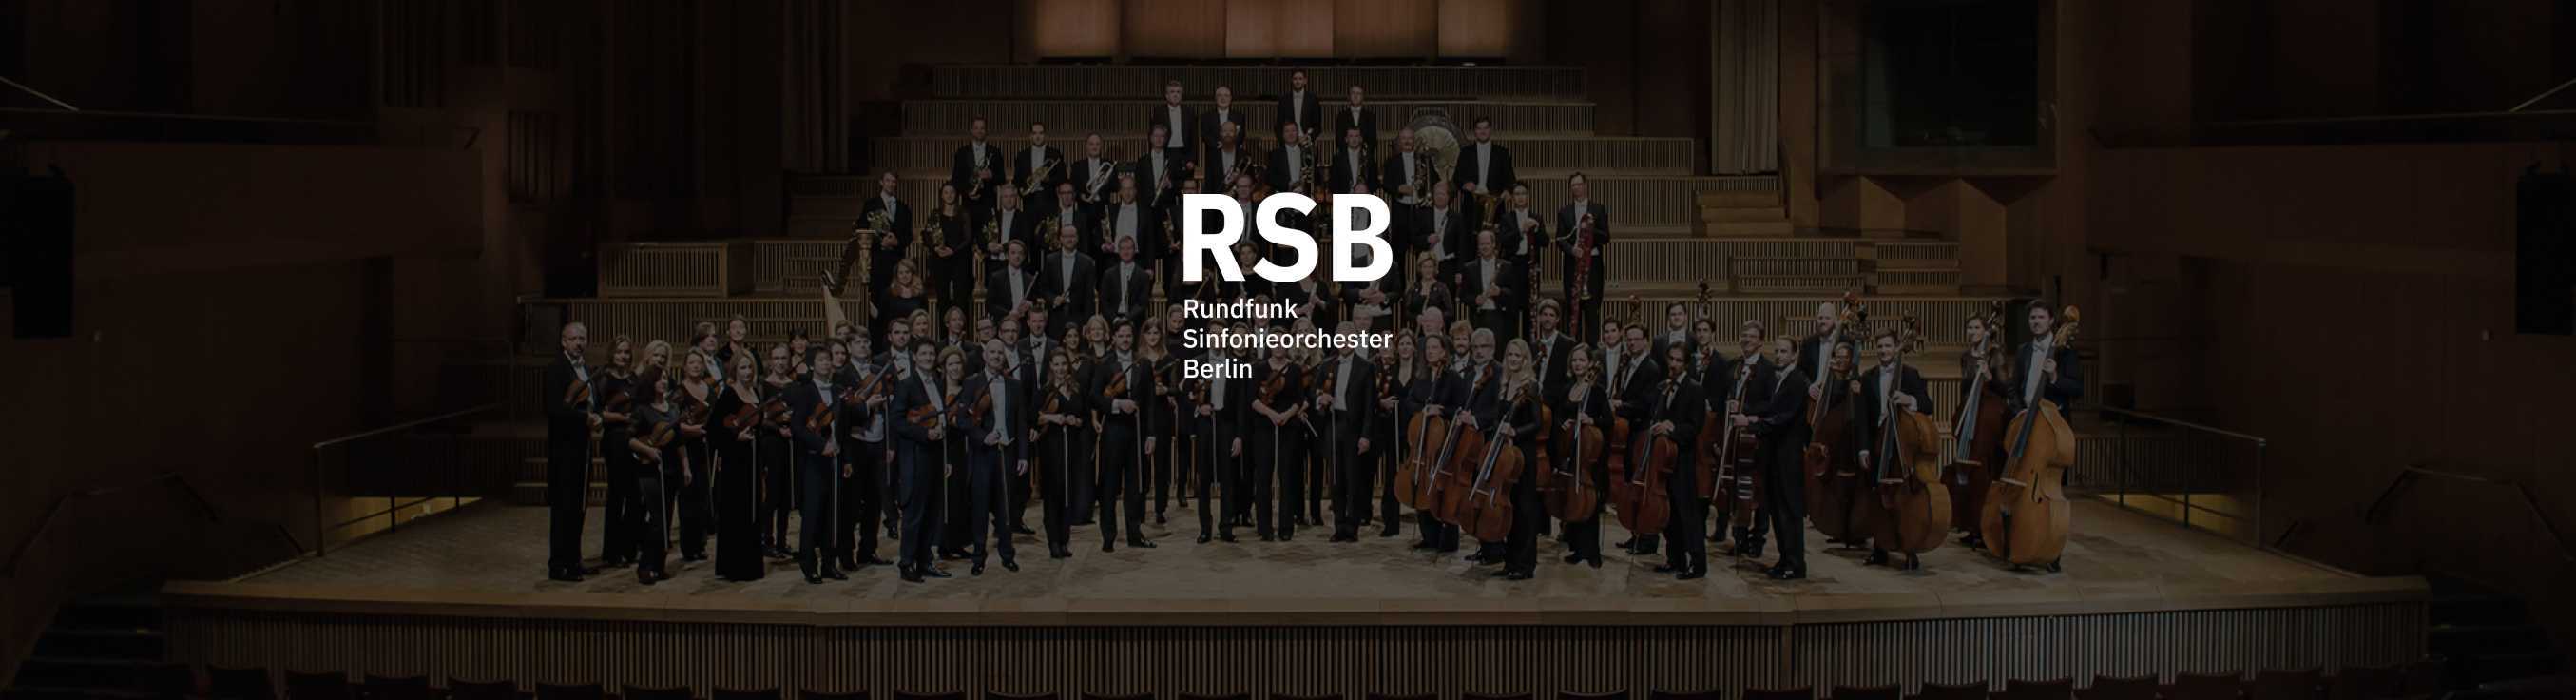 Rundfunk-Sinfonieorchester at Konzerthaus Berlin